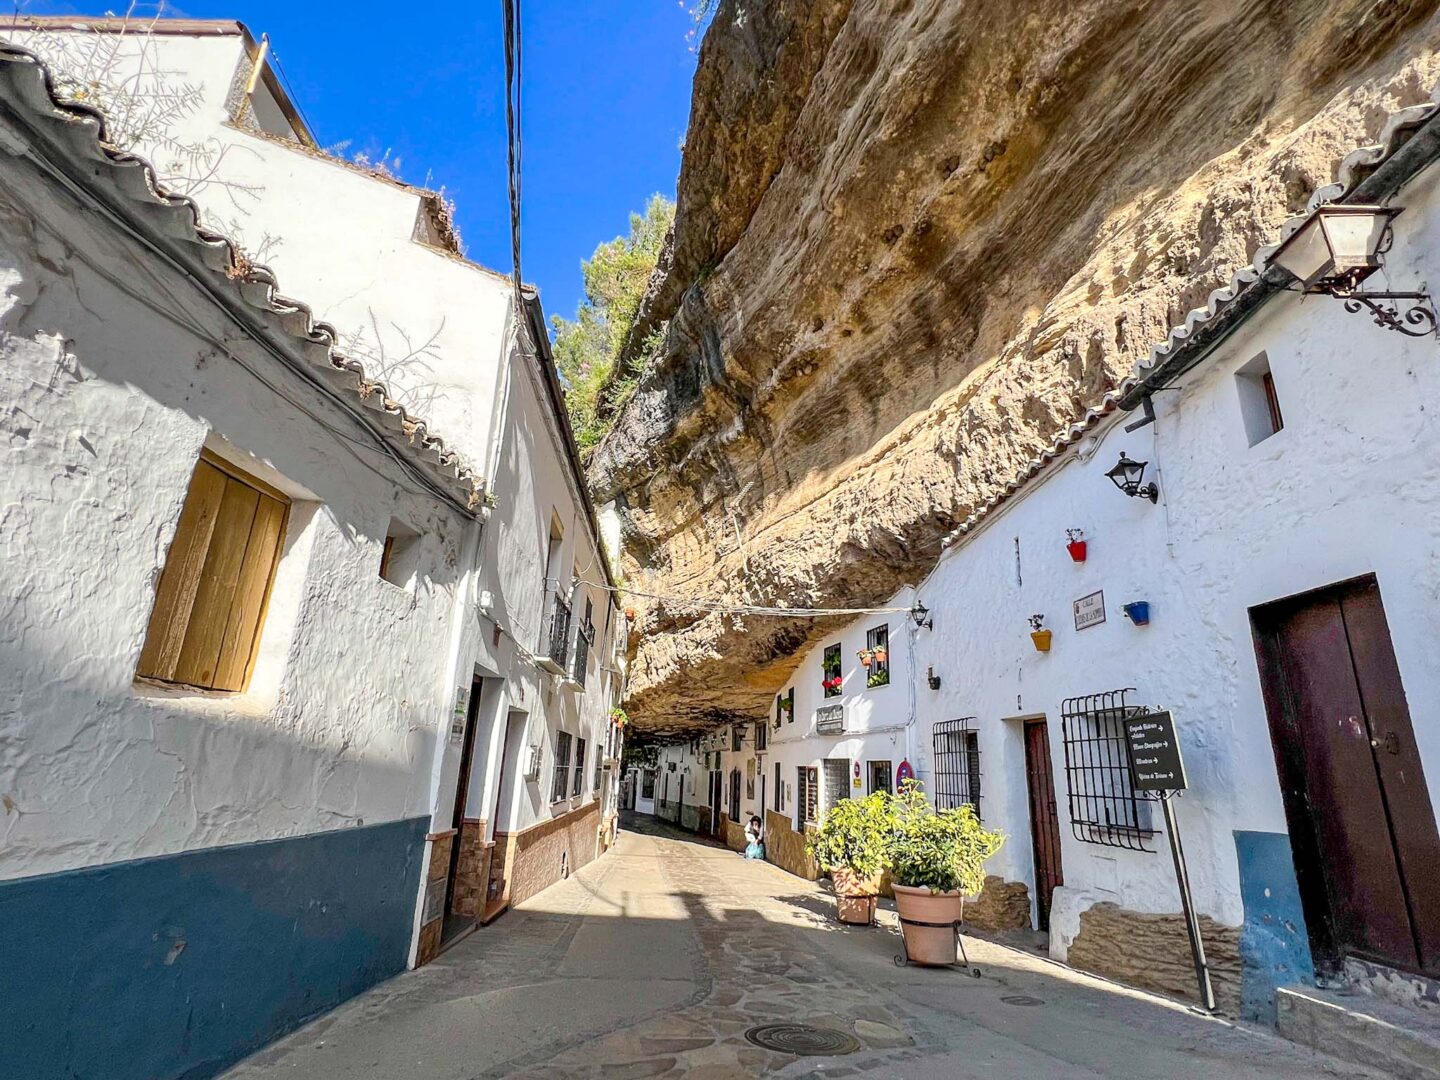 Southern Spain itinerary, Setenil de las Bodegas buildings in rock